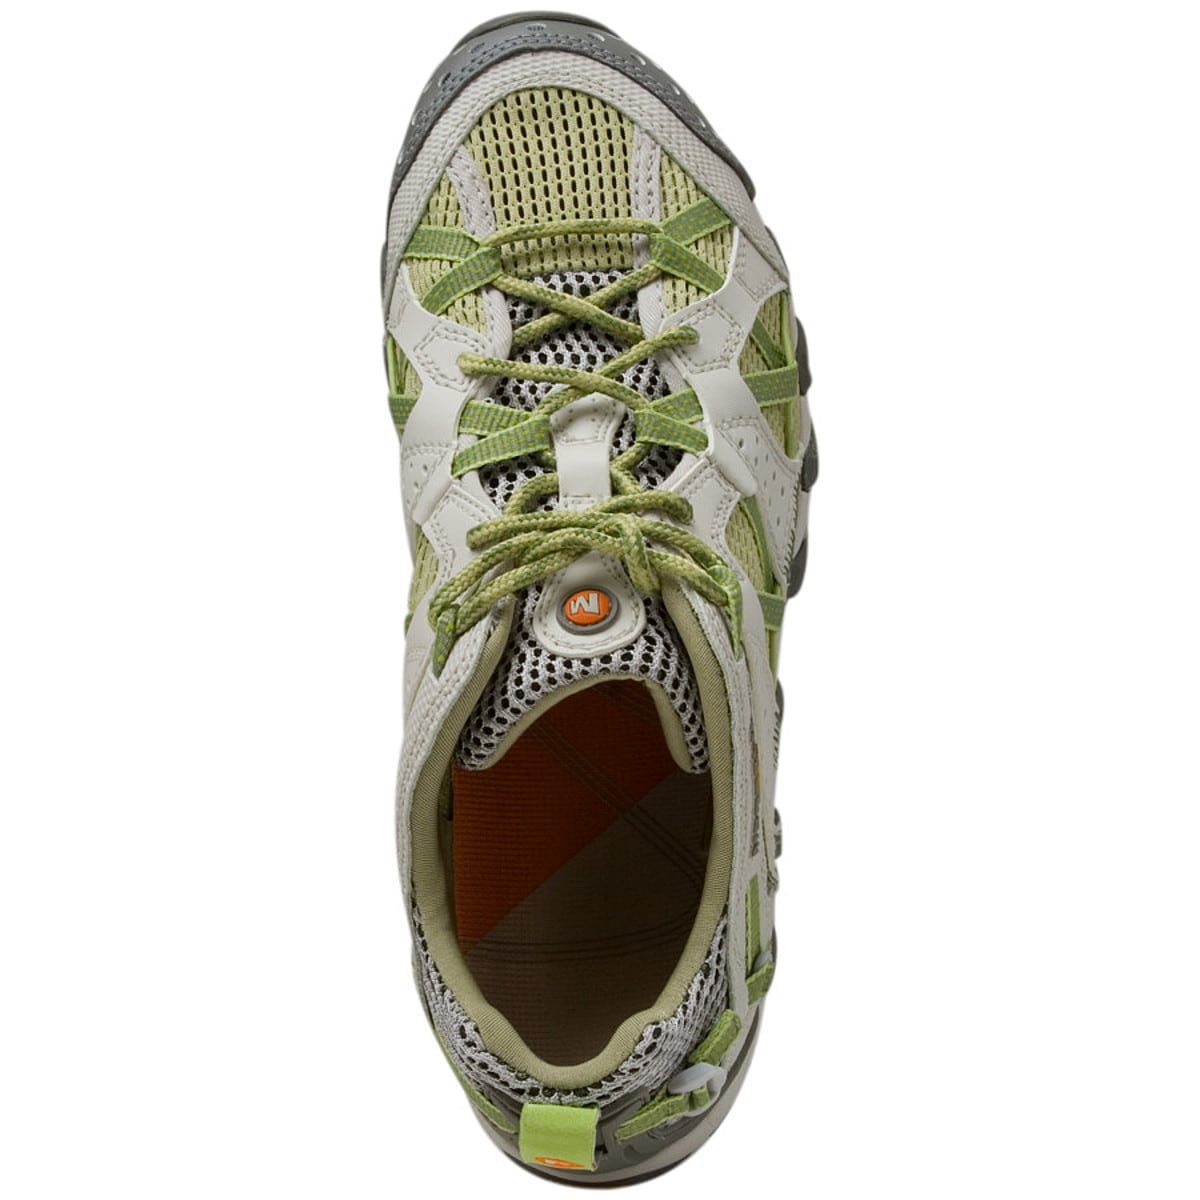 Merrell Maipo Water Shoe - - Footwear